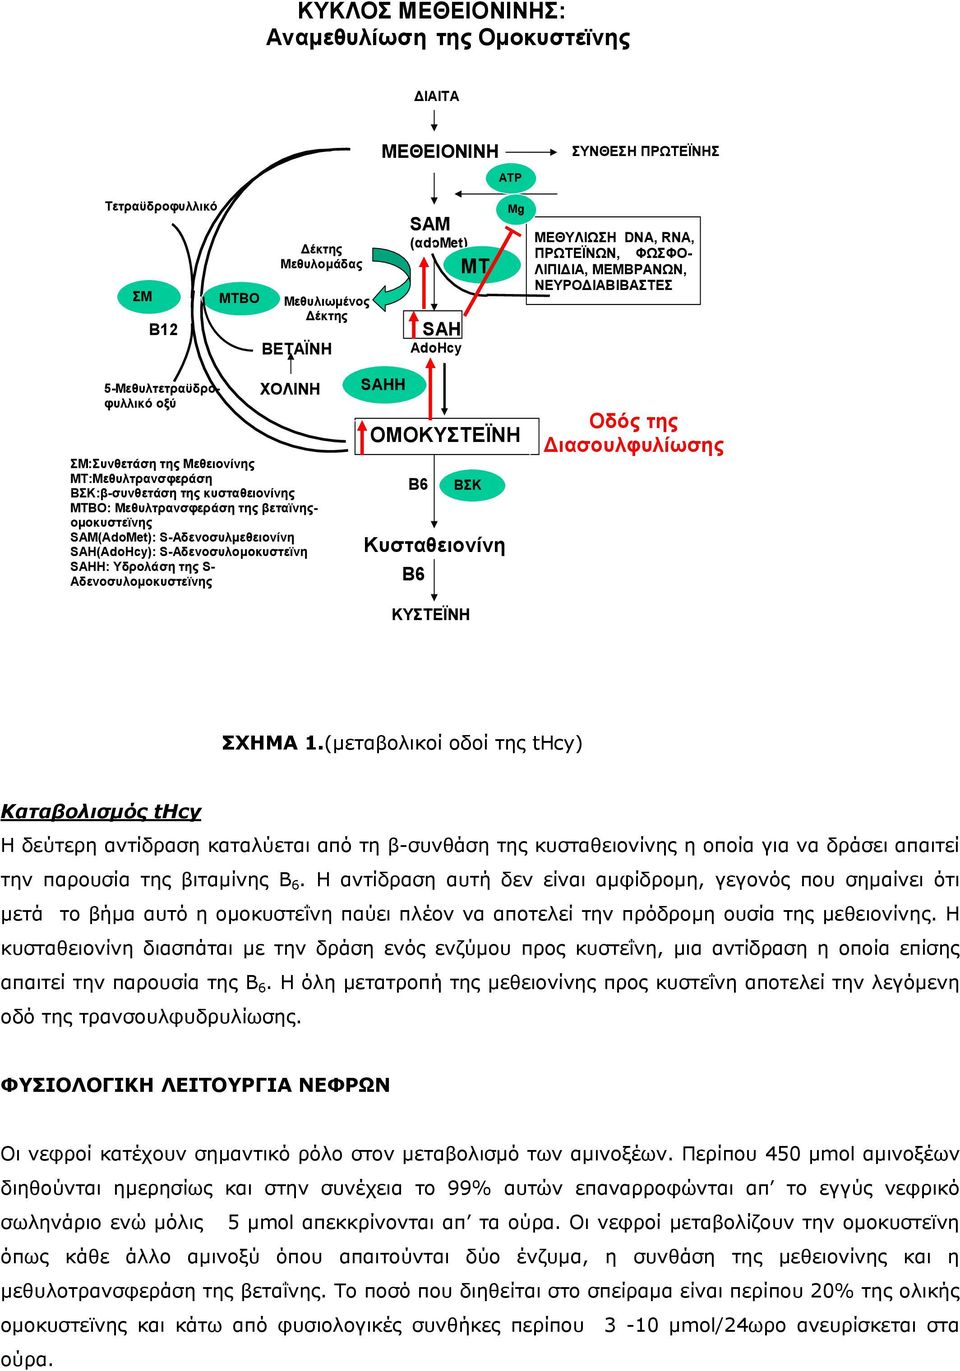 Μεθυλτρανσφεράση της βεταϊνηςοµοκυστεϊνης SAM(AdoMet): S-Αδενοσυλµεθειονίνη SAH(AdoHcy): S-Αδενοσυλοµοκυστεϊνη SAHH: Υδρολάση της S- Αδενοσυλοµοκυστεϊνης SAHH ΟΜΟΚΥΣΤΕΪΝΗ B6 ΒΣΚ Κυσταθειονίνη Β6